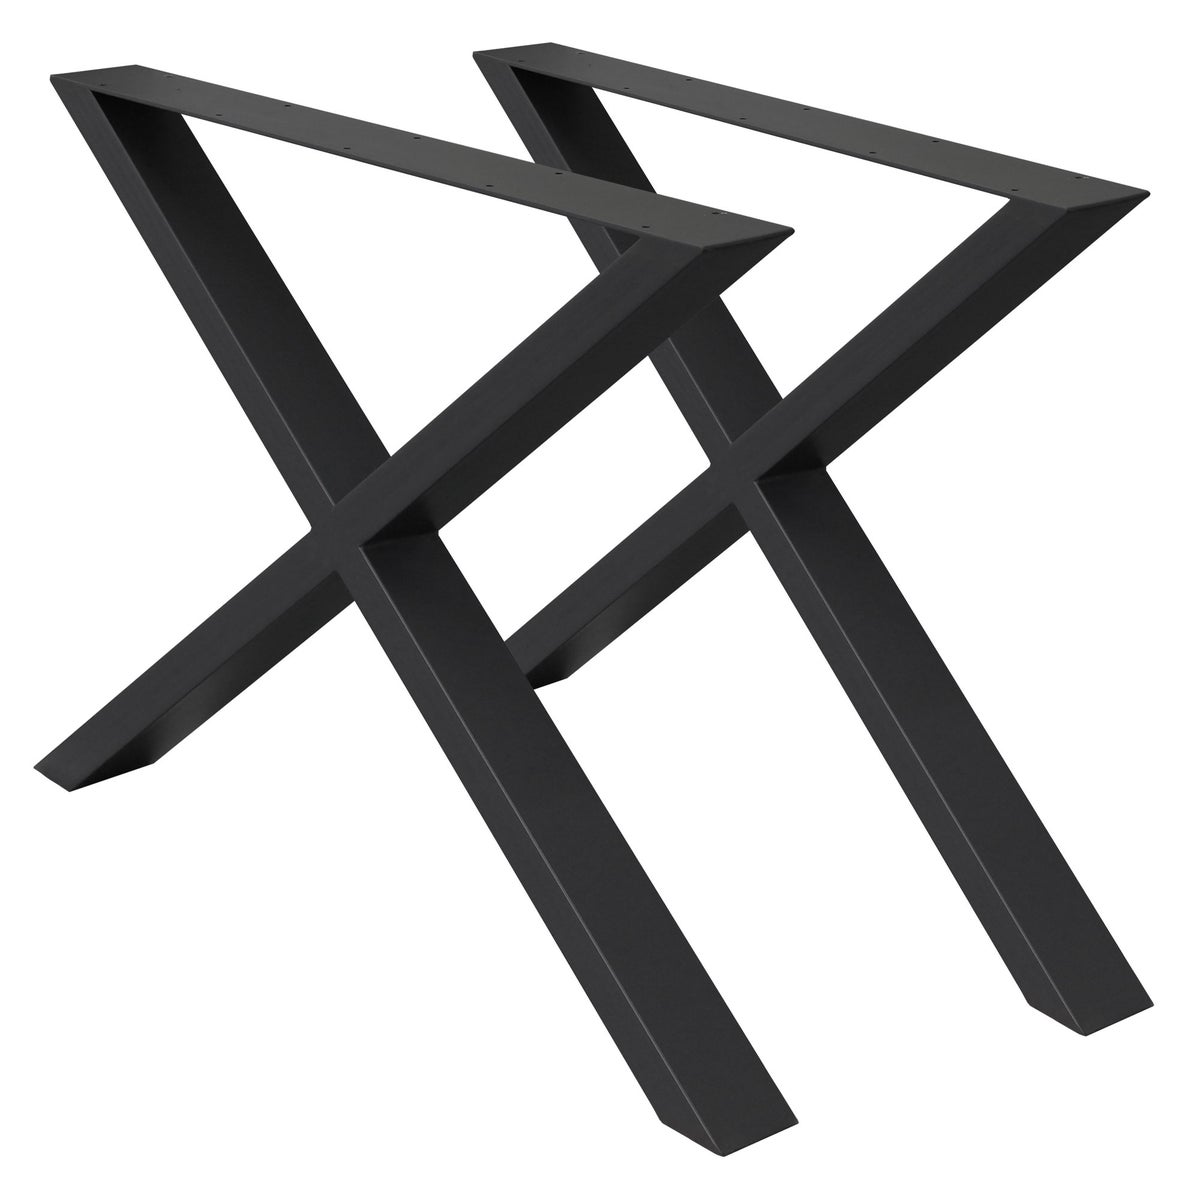 ECD Germany 2x Tischbeine X-Design X-Form, 60 x 72 cm, Schwarz, pulverbeschichtete Stahl, Industriedesign, Metall Tischkufen Tischuntergestell Tischgestell Möbelfüße, für Esstisch Schreibtisch